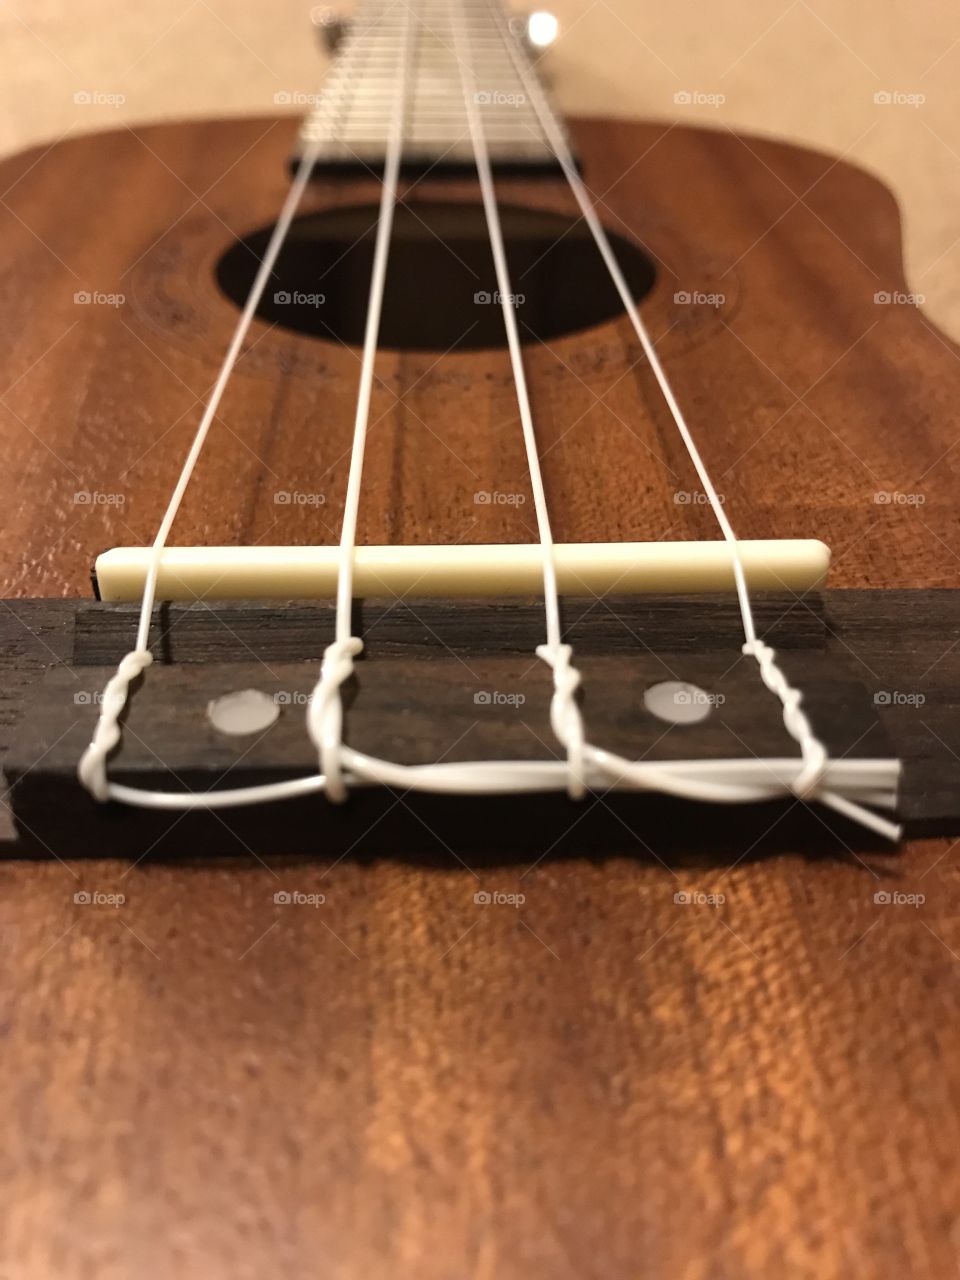 Ukulele strings